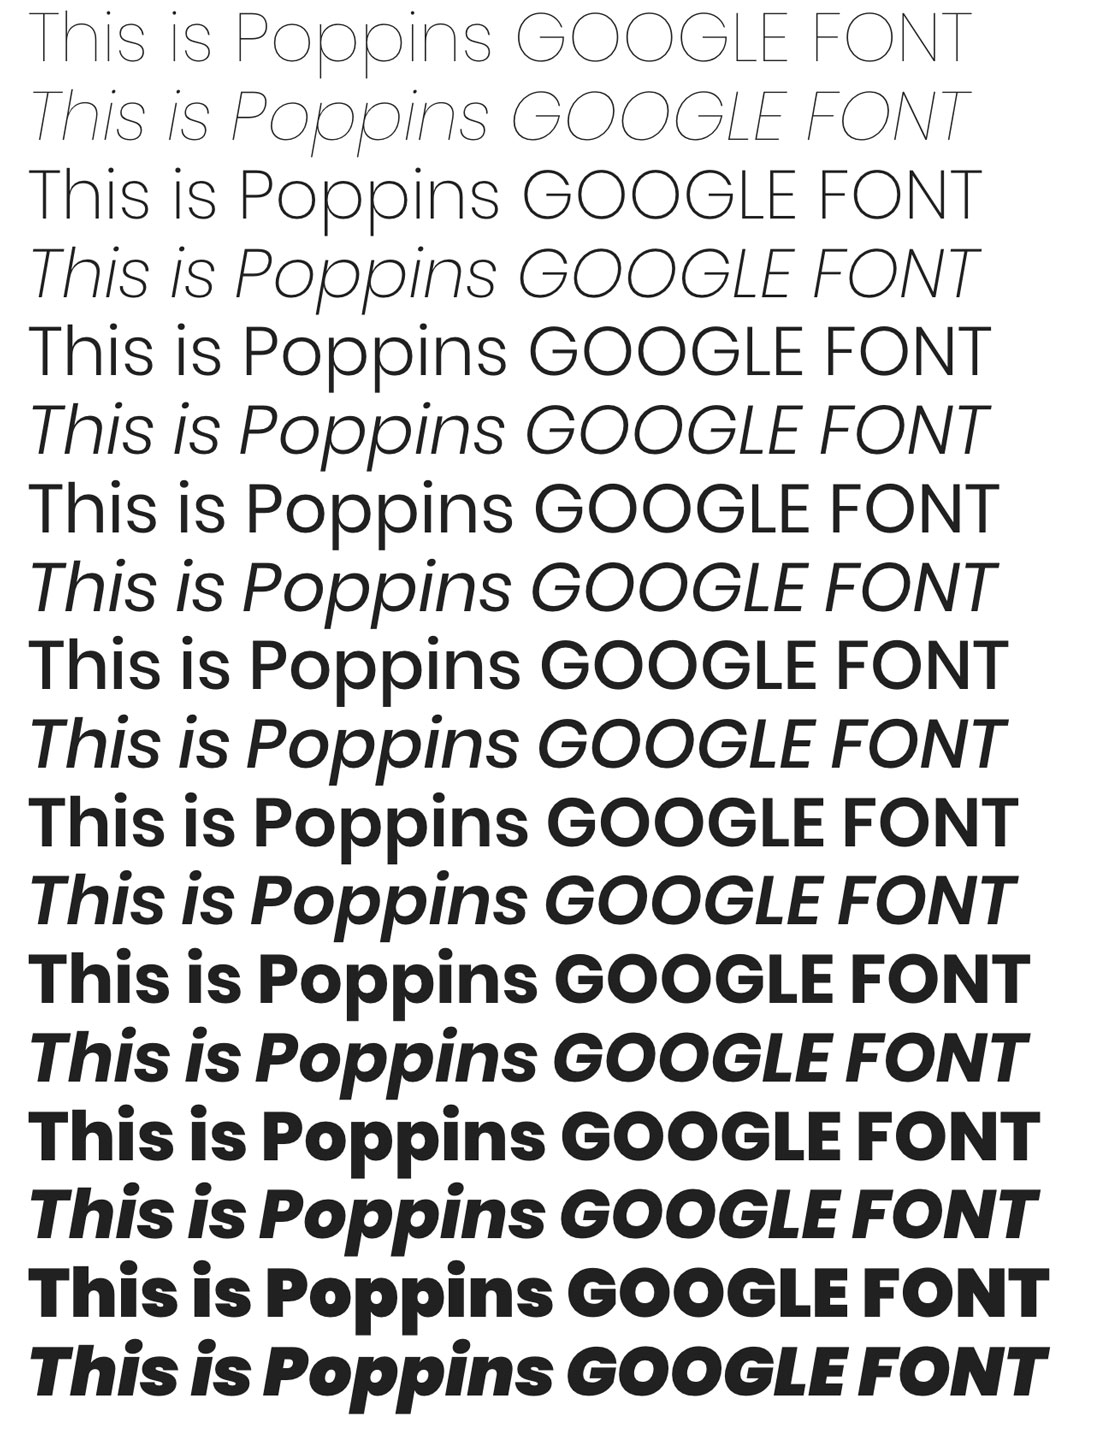 google fonts